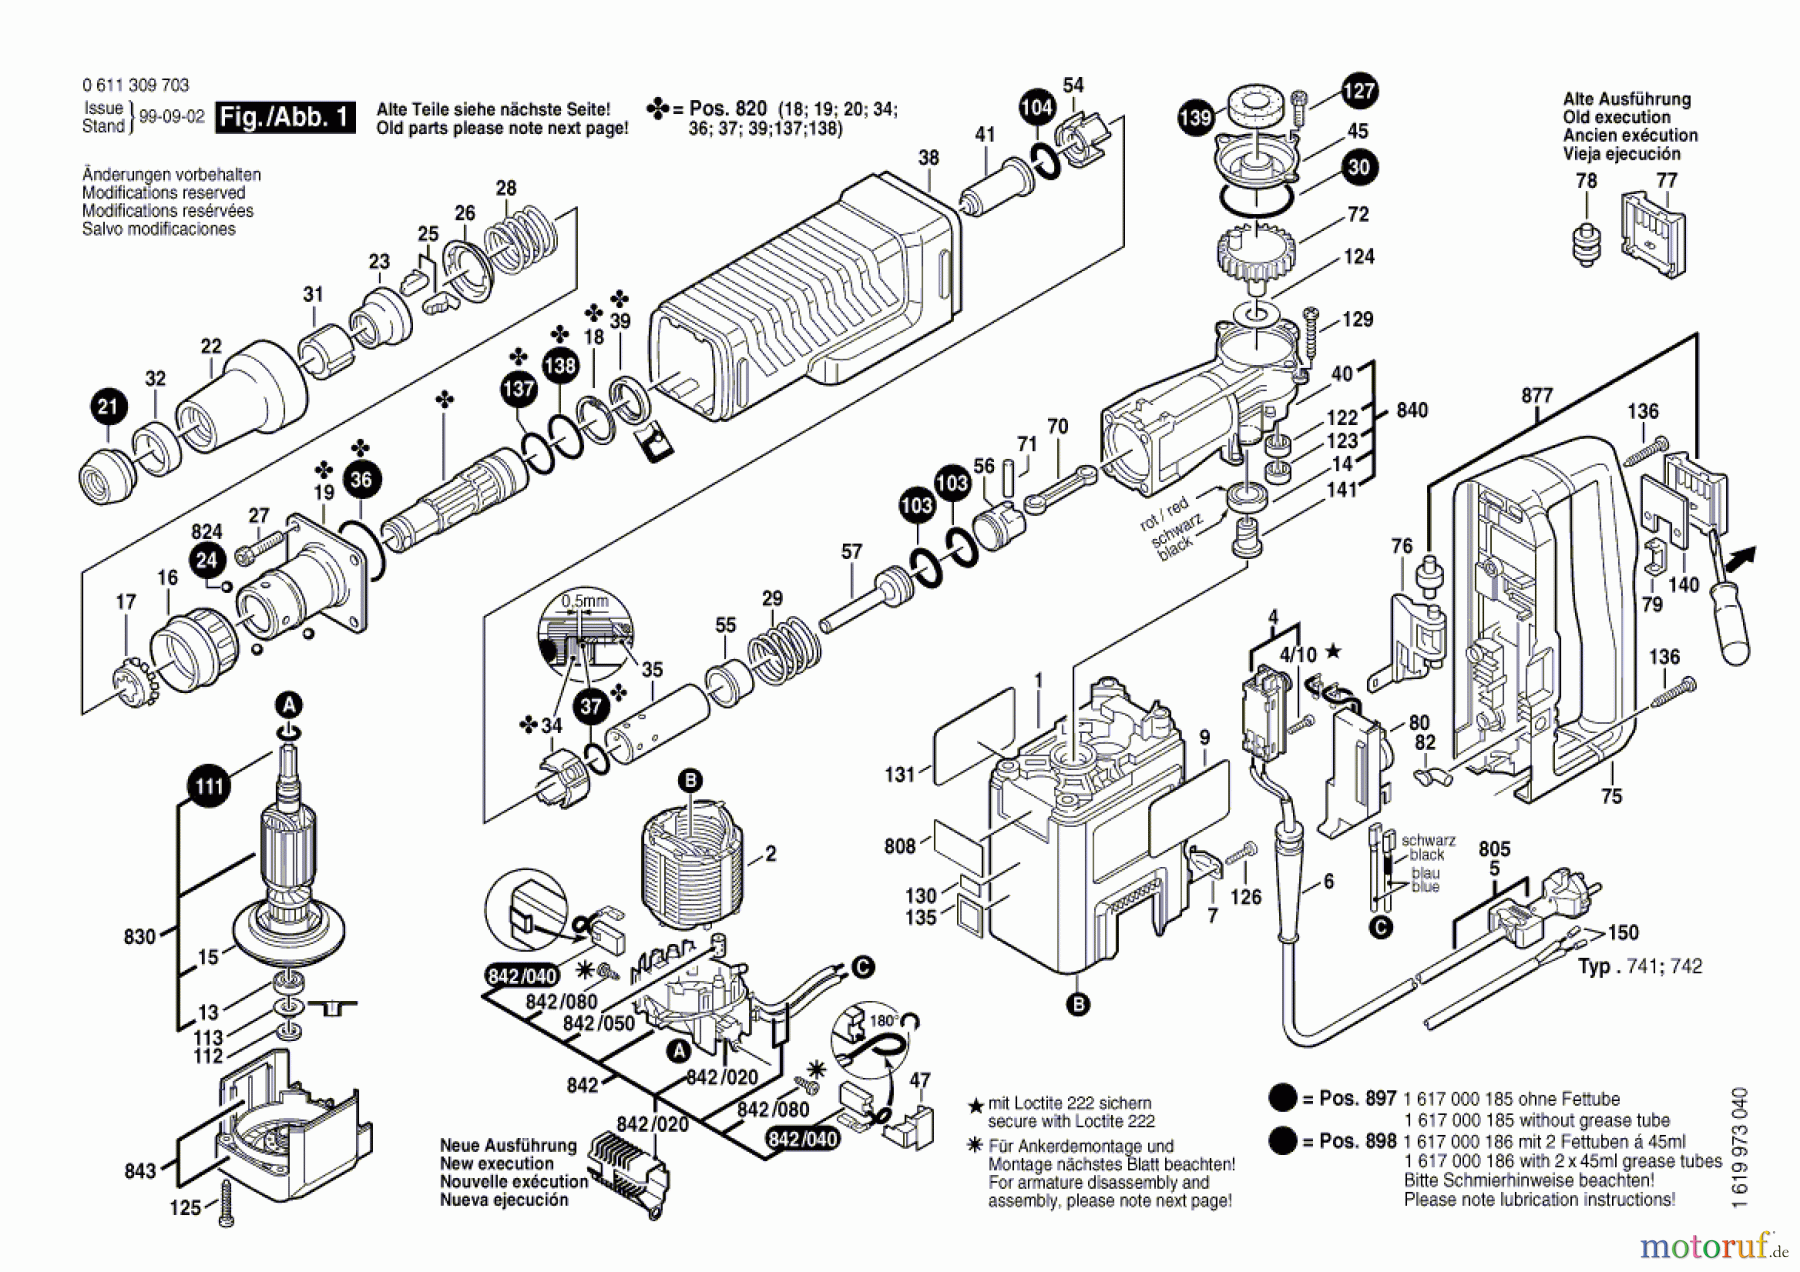  Bosch Werkzeug Schlaghammer GSH 5 CE Seite 1